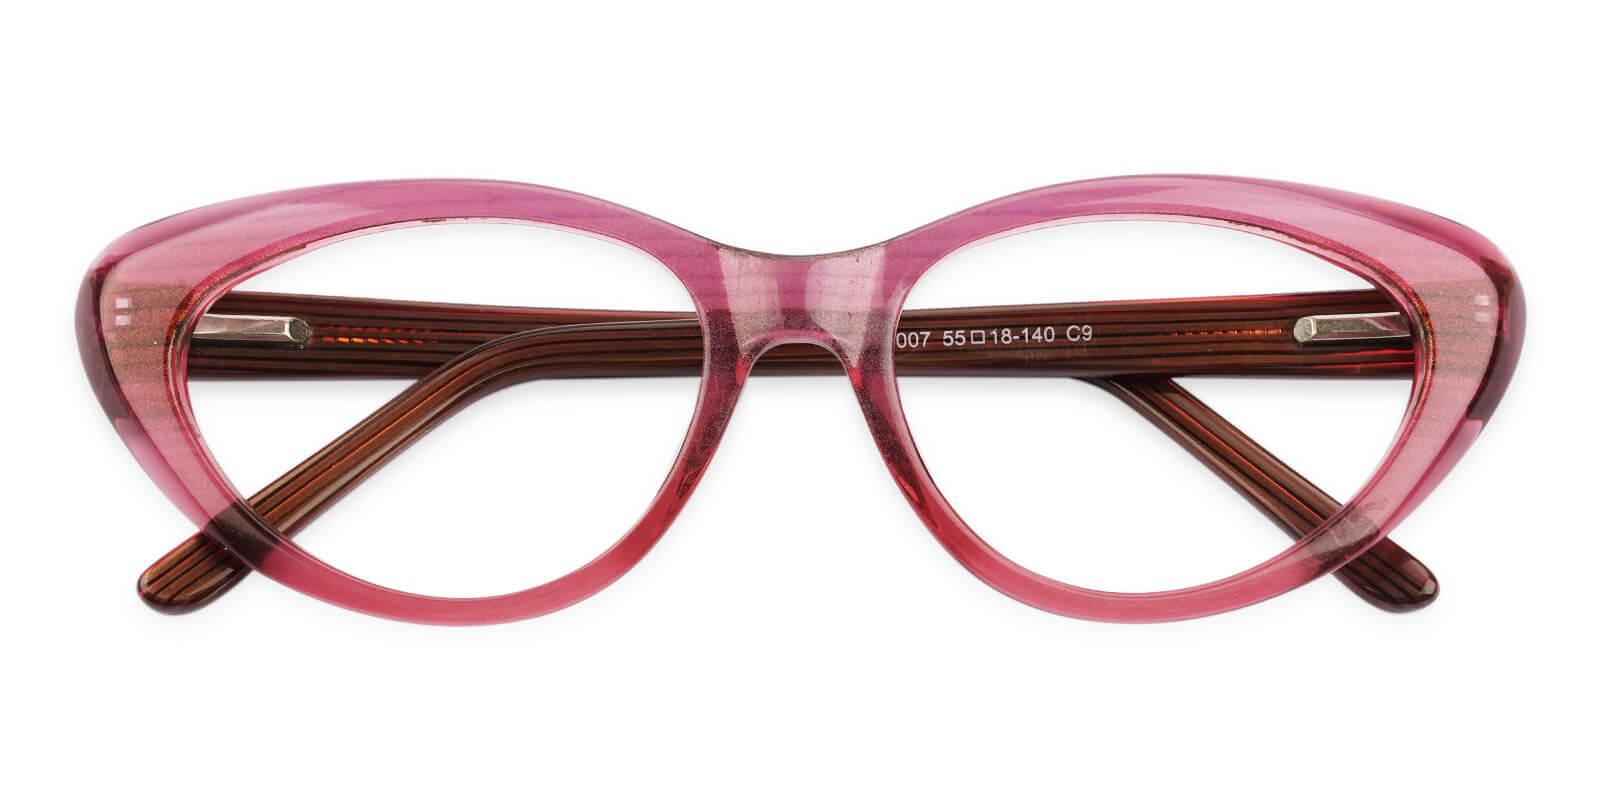 Irene Red Acetate Eyeglasses , SpringHinges , UniversalBridgeFit Frames from ABBE Glasses